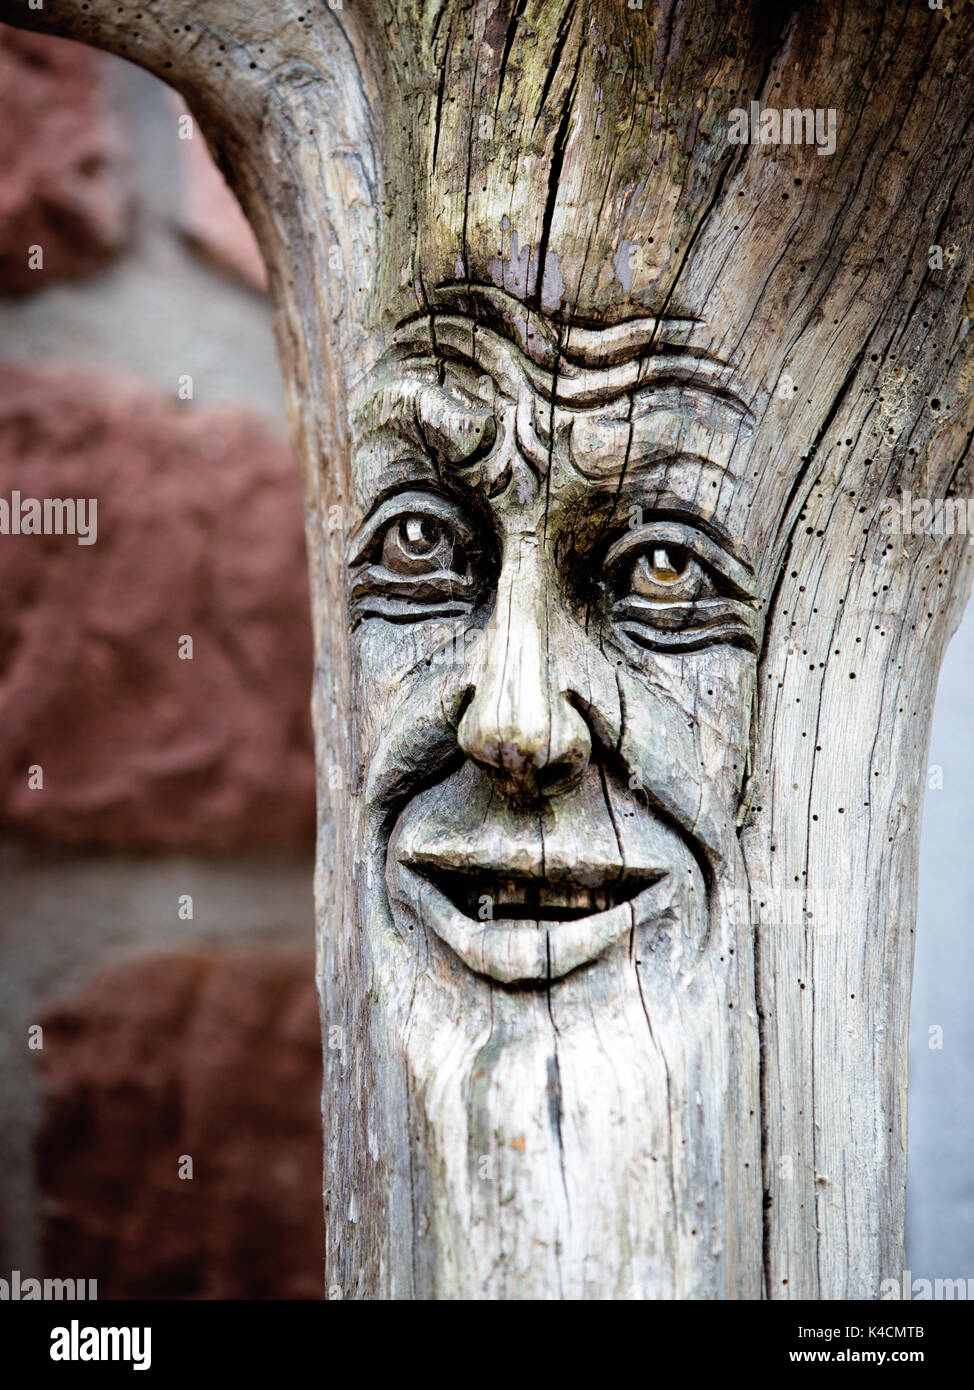 Escultura en madera, la cara en tronco de árbol Foto de stock